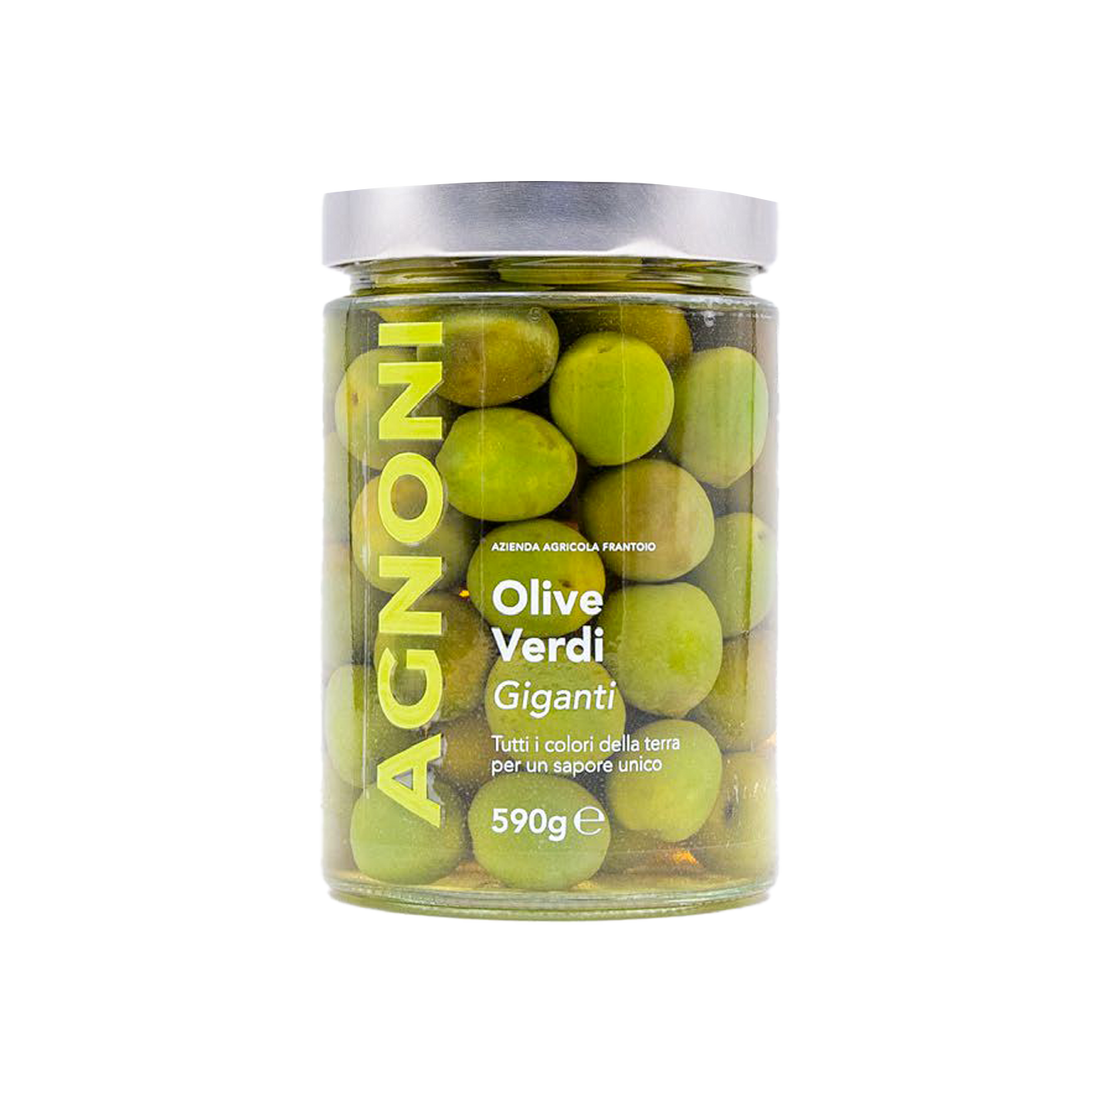 Olive Verdi Giganti